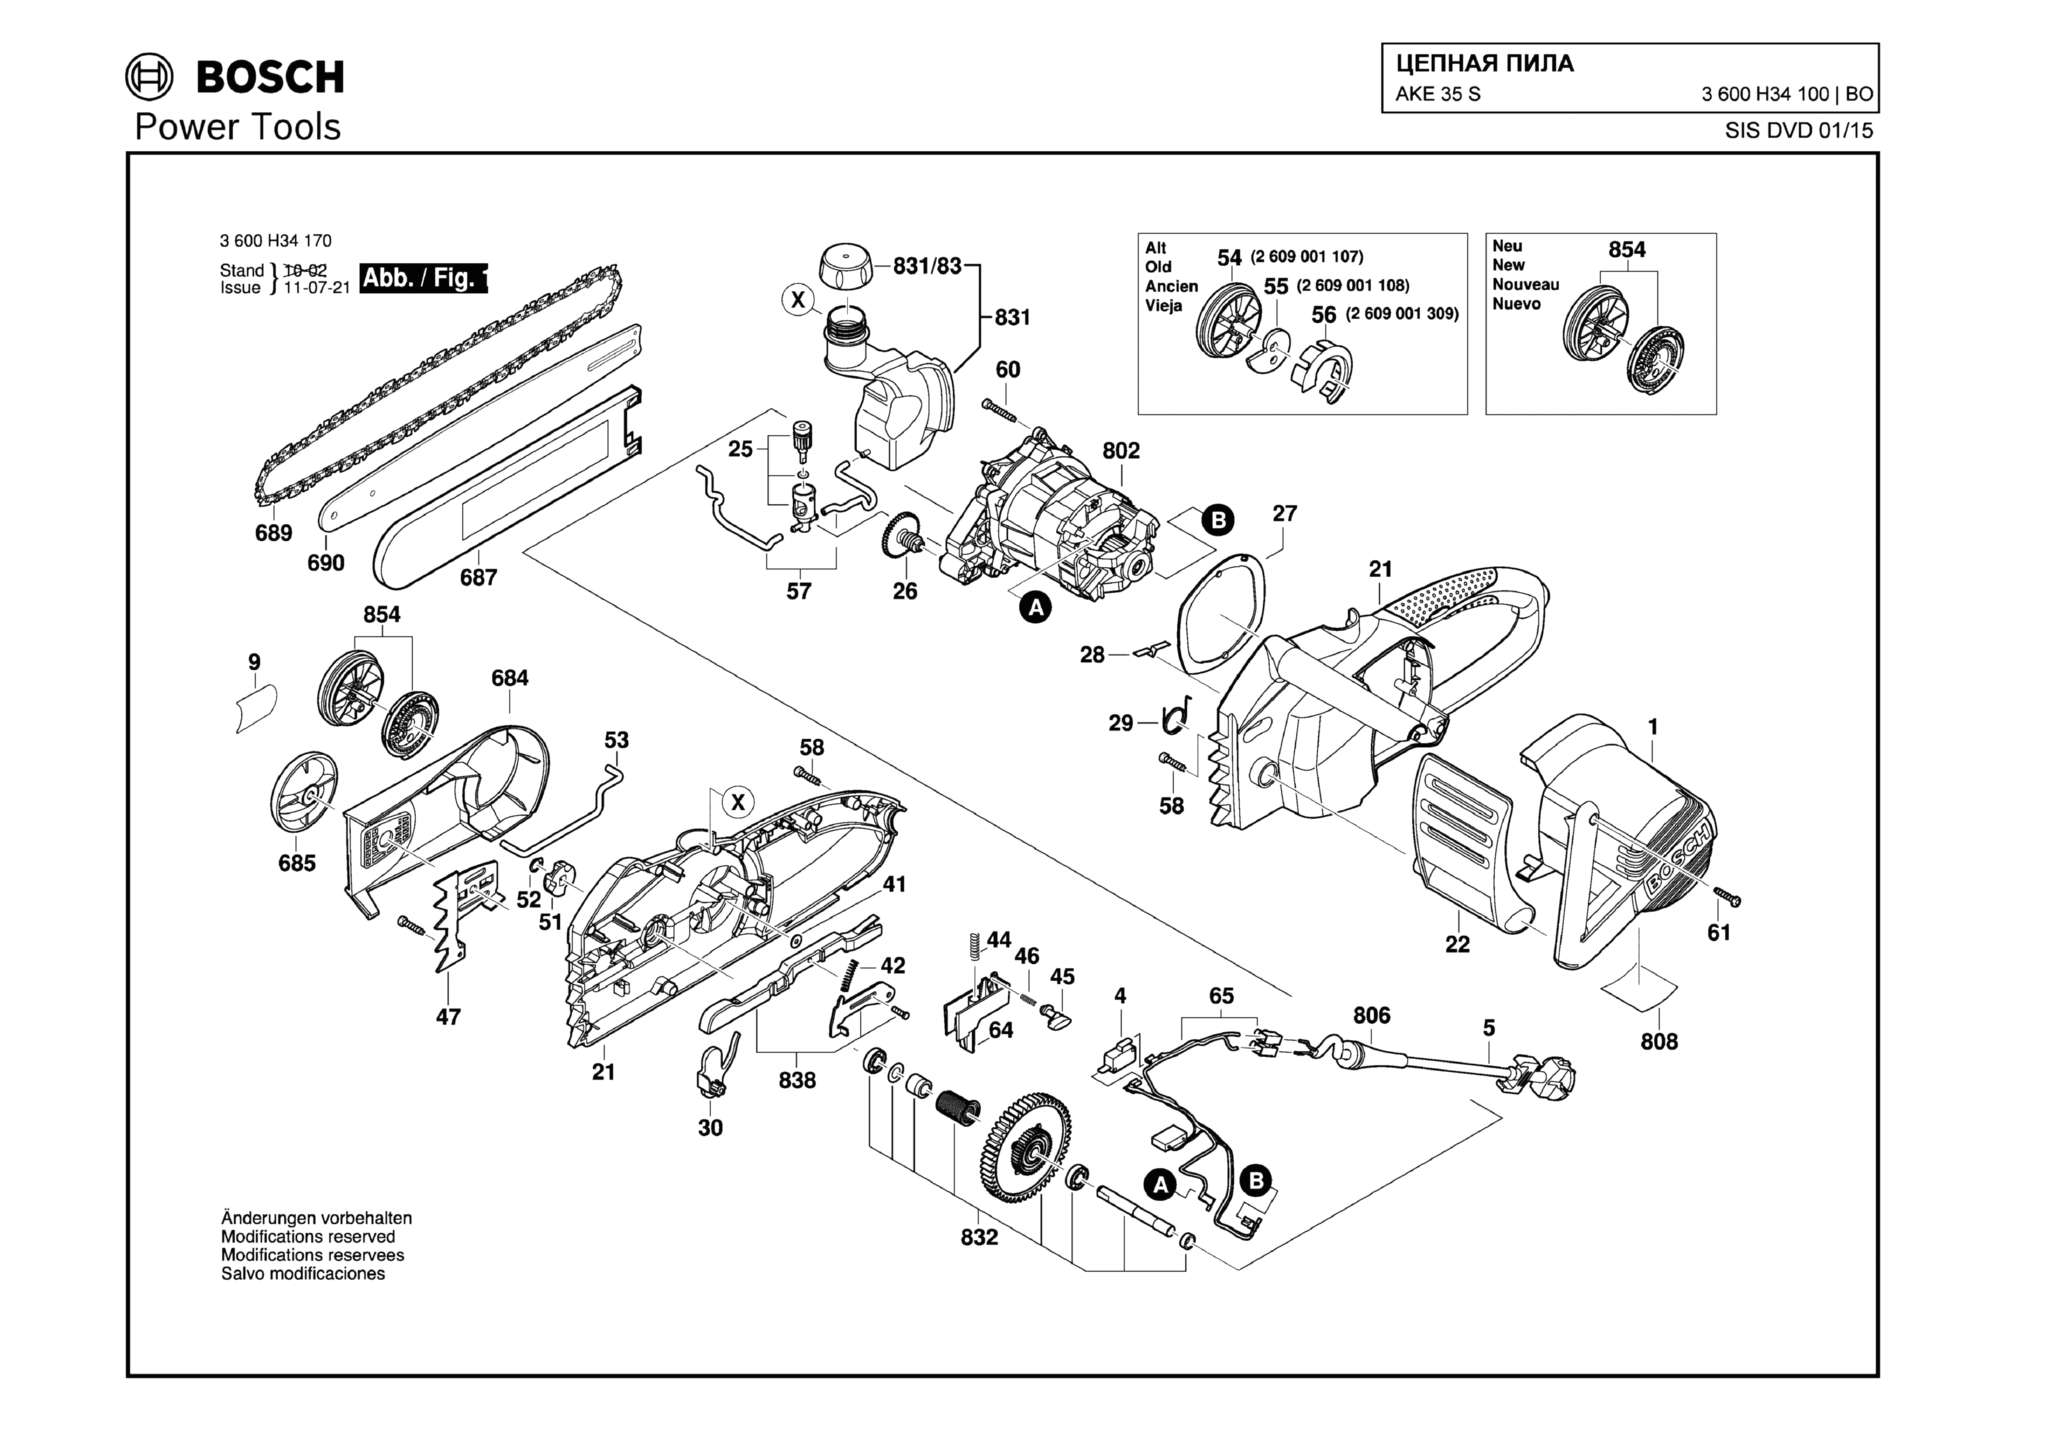 Запчасти, схема и деталировка Bosch AKE 35 S (ТИП 3600H34100)